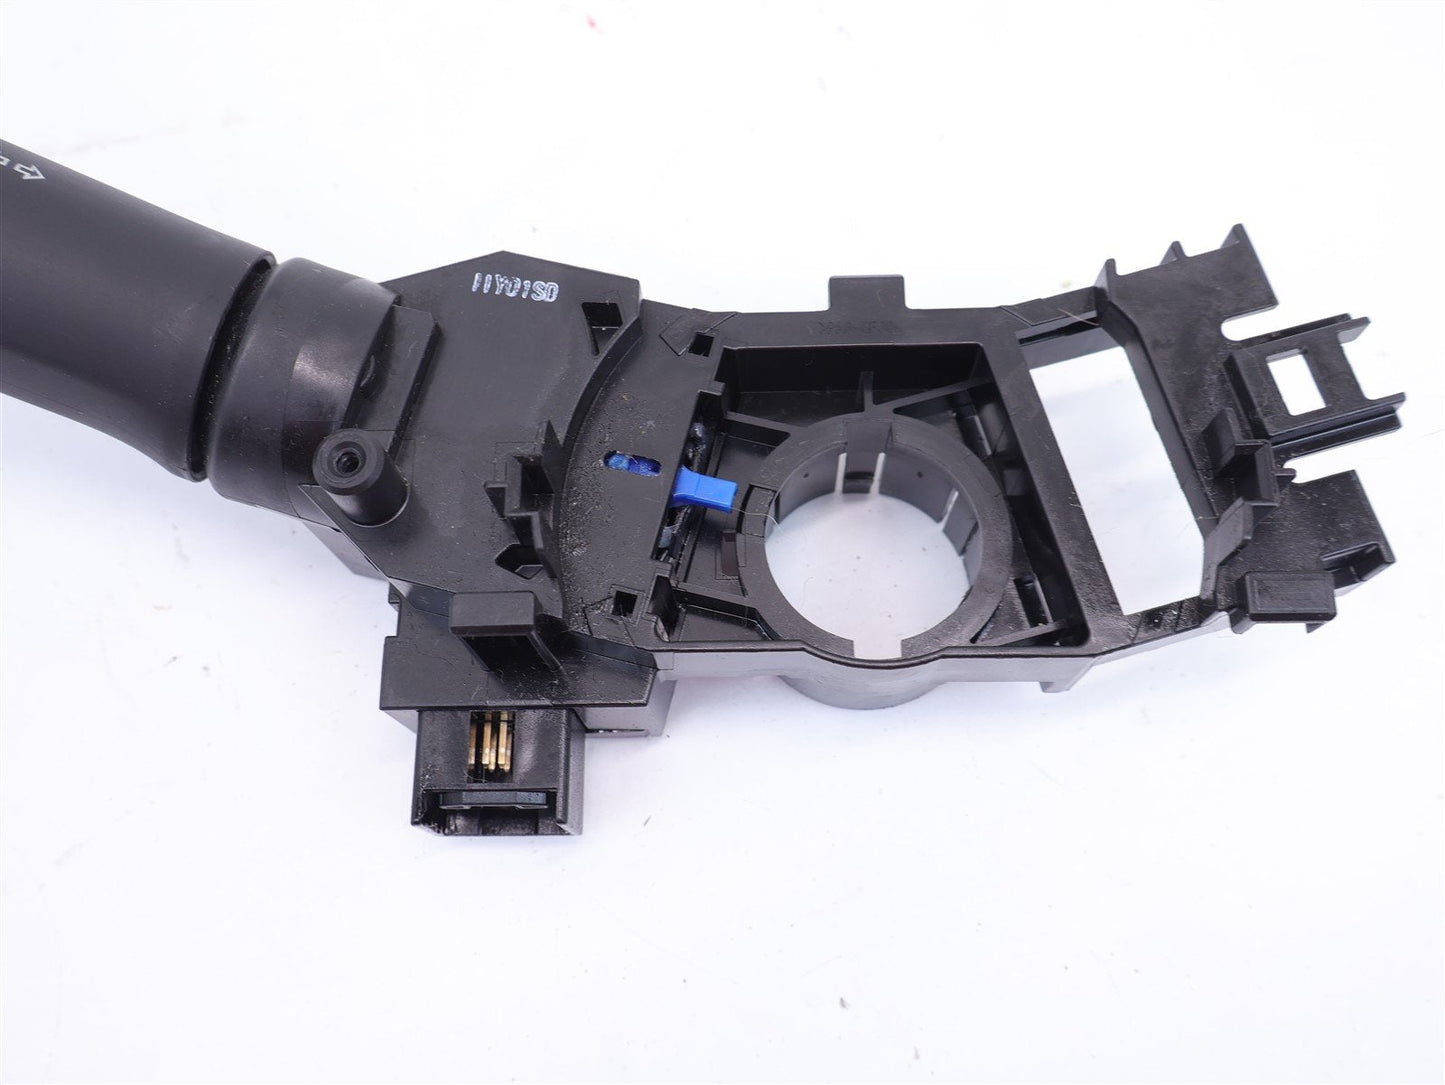 10-12 Subaru Legacy Outback Headlight Turn Signal Switch Steering Column w/ fog